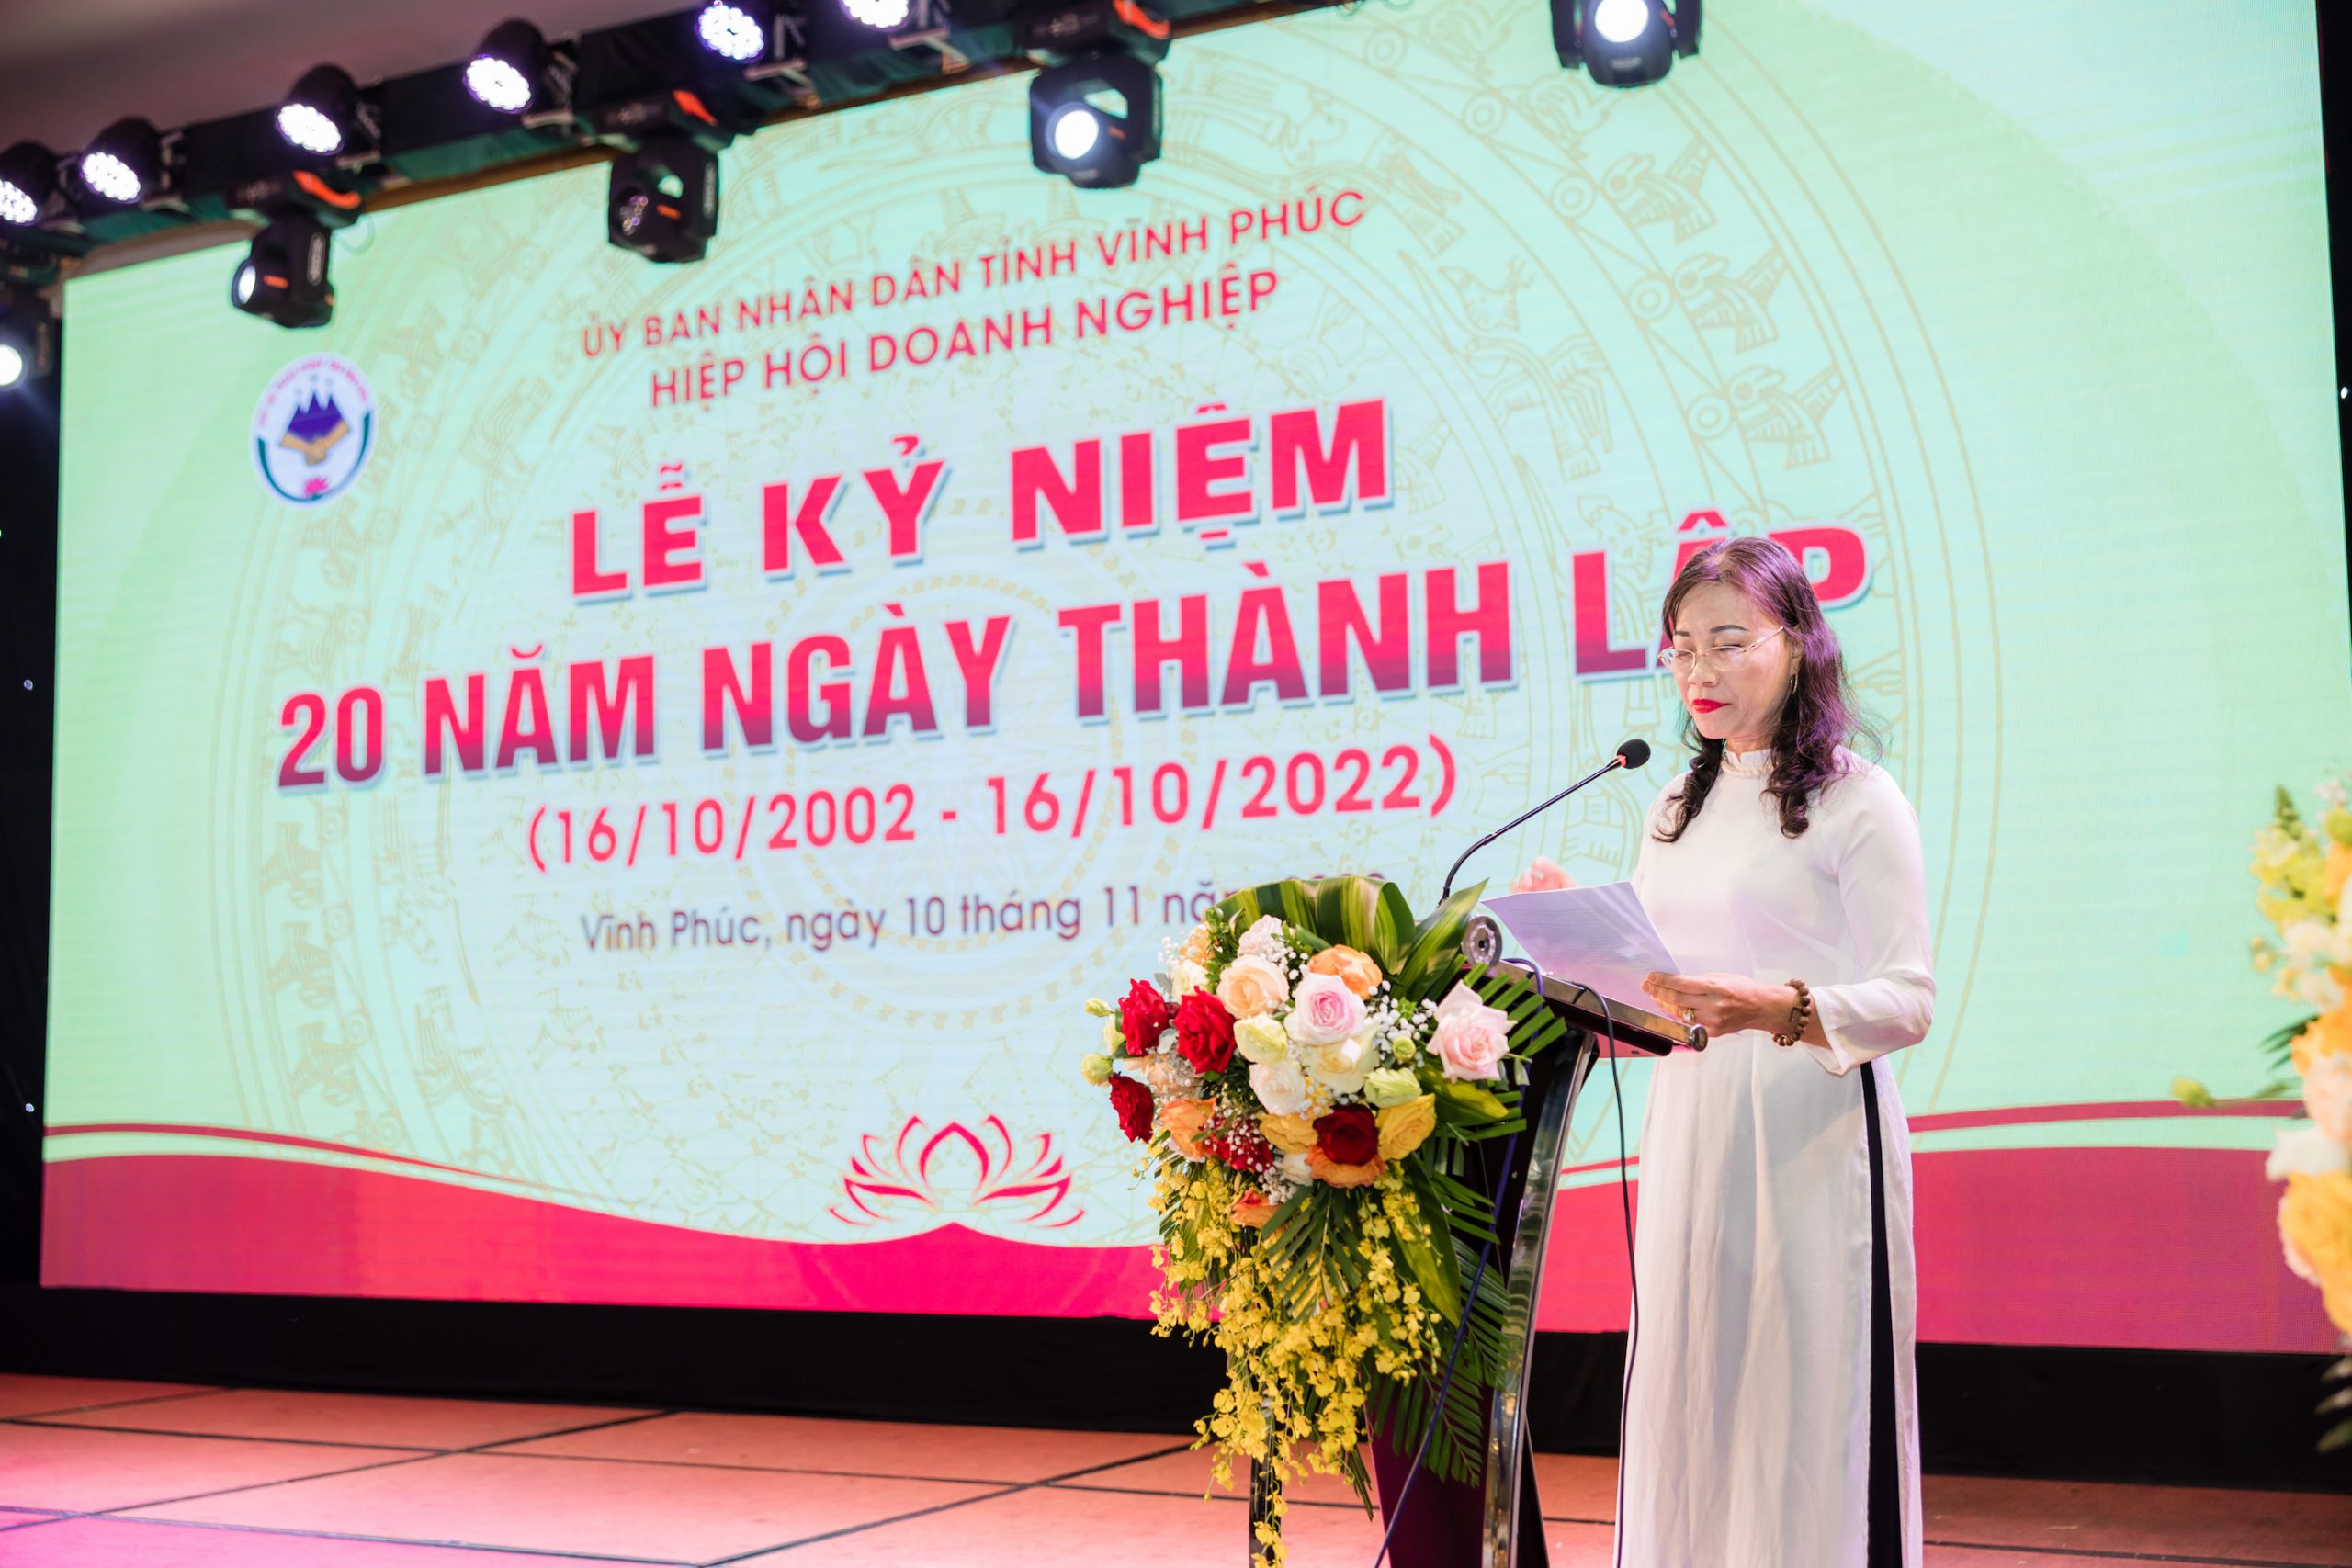 Bà Phạm Thị Hồng Thủy - Chủ tịch Hiệp hội doanh nghiệp tỉnh Vĩnh Phúc phát biểu tại Lễ kỷ niệm 20 năm ngày thành lập Hiệp hội (16/10/2002 – 16/10/2022)